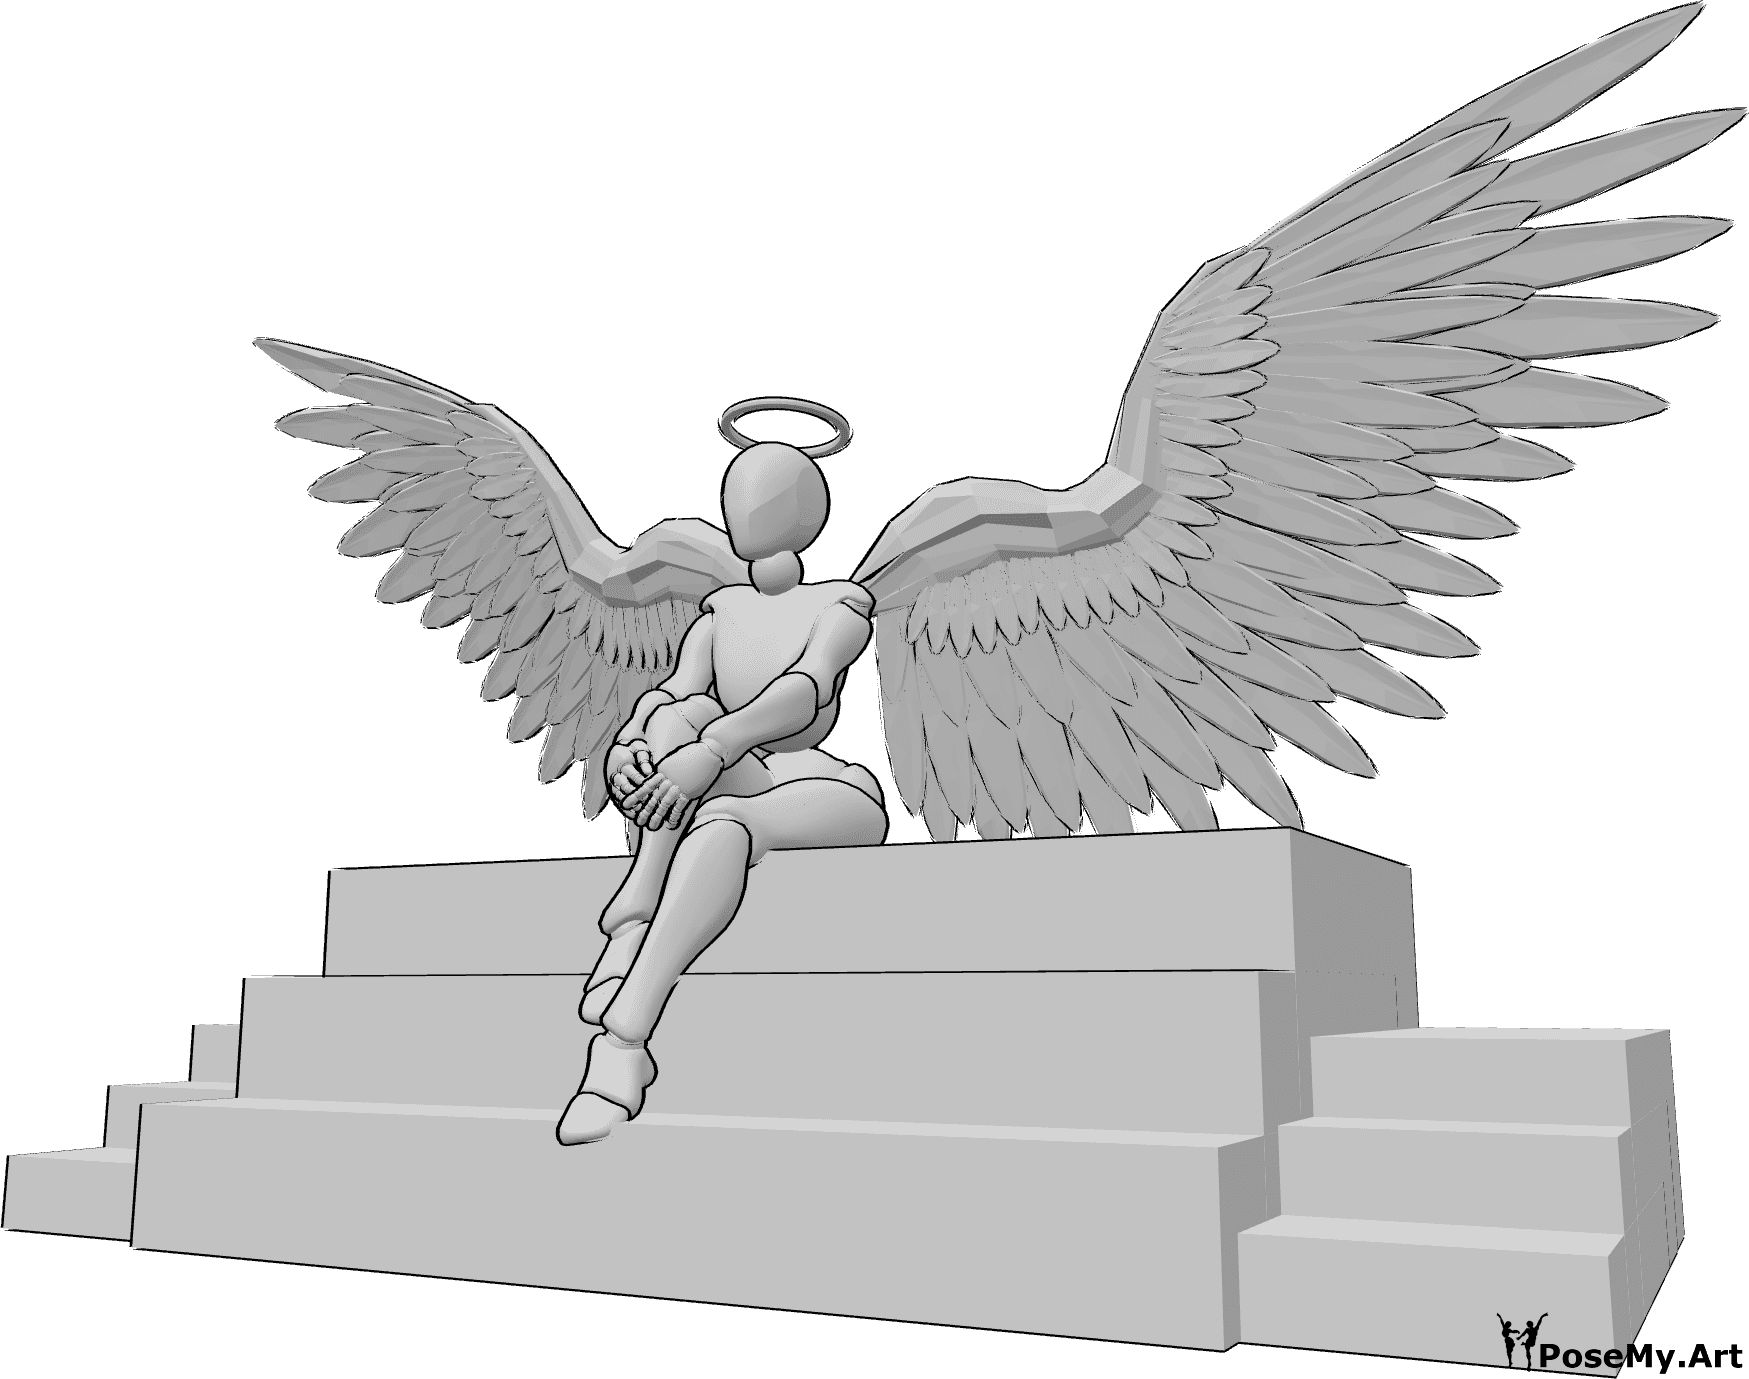 Referencia de poses- Ángel femenino sentado - Un ángel femenino está sentado en las escaleras, sujetándose la rodilla y mirando hacia delante.